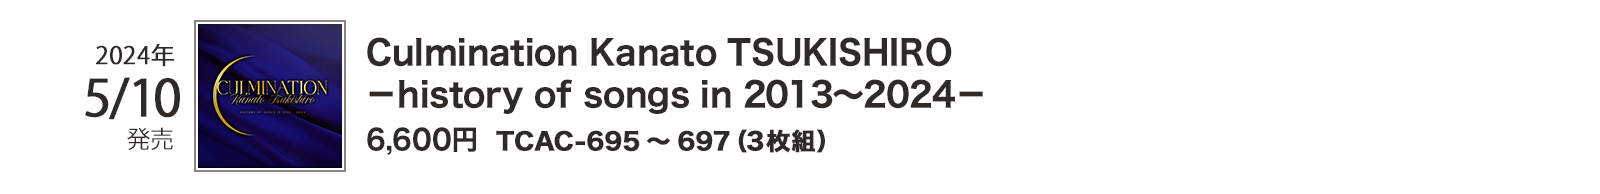 2024N510/TCAC-695`697i3gj/Culmination Kanato TSUKISHIRO|history of songs in 2013`2024|/6,600~